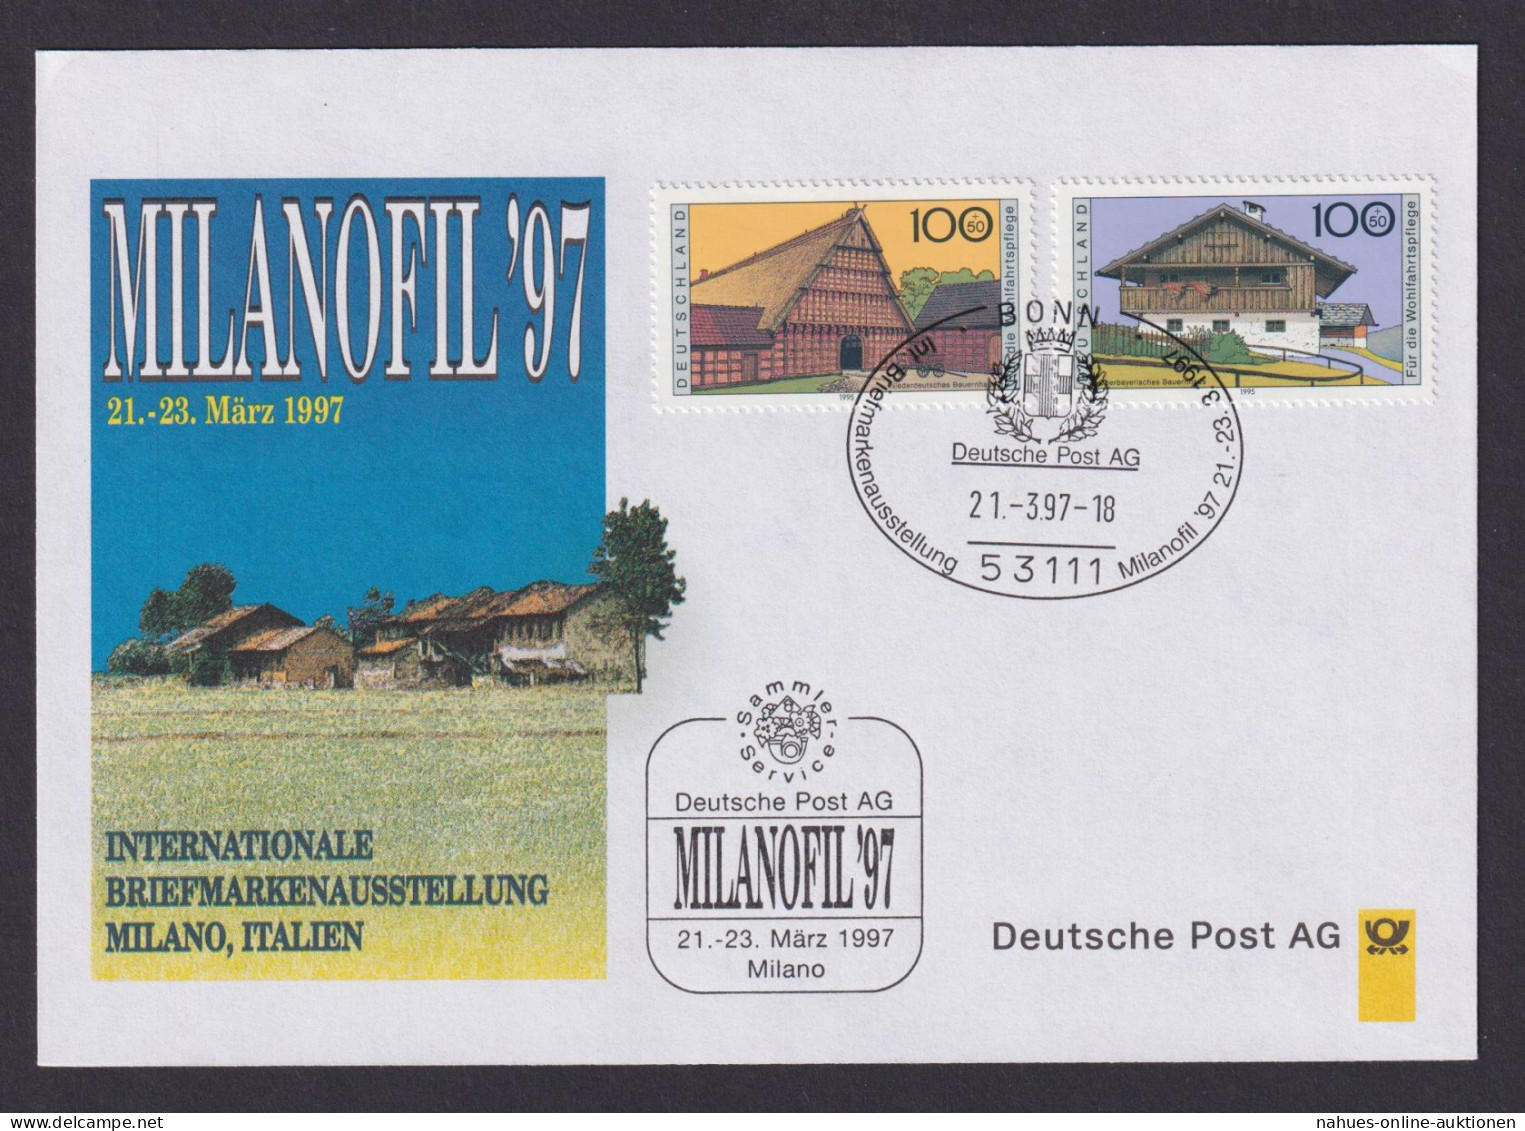 Philatelie Briefmarkenausstellung Milanofil Mailand Italien 1997 SST Deutsche - Covers & Documents